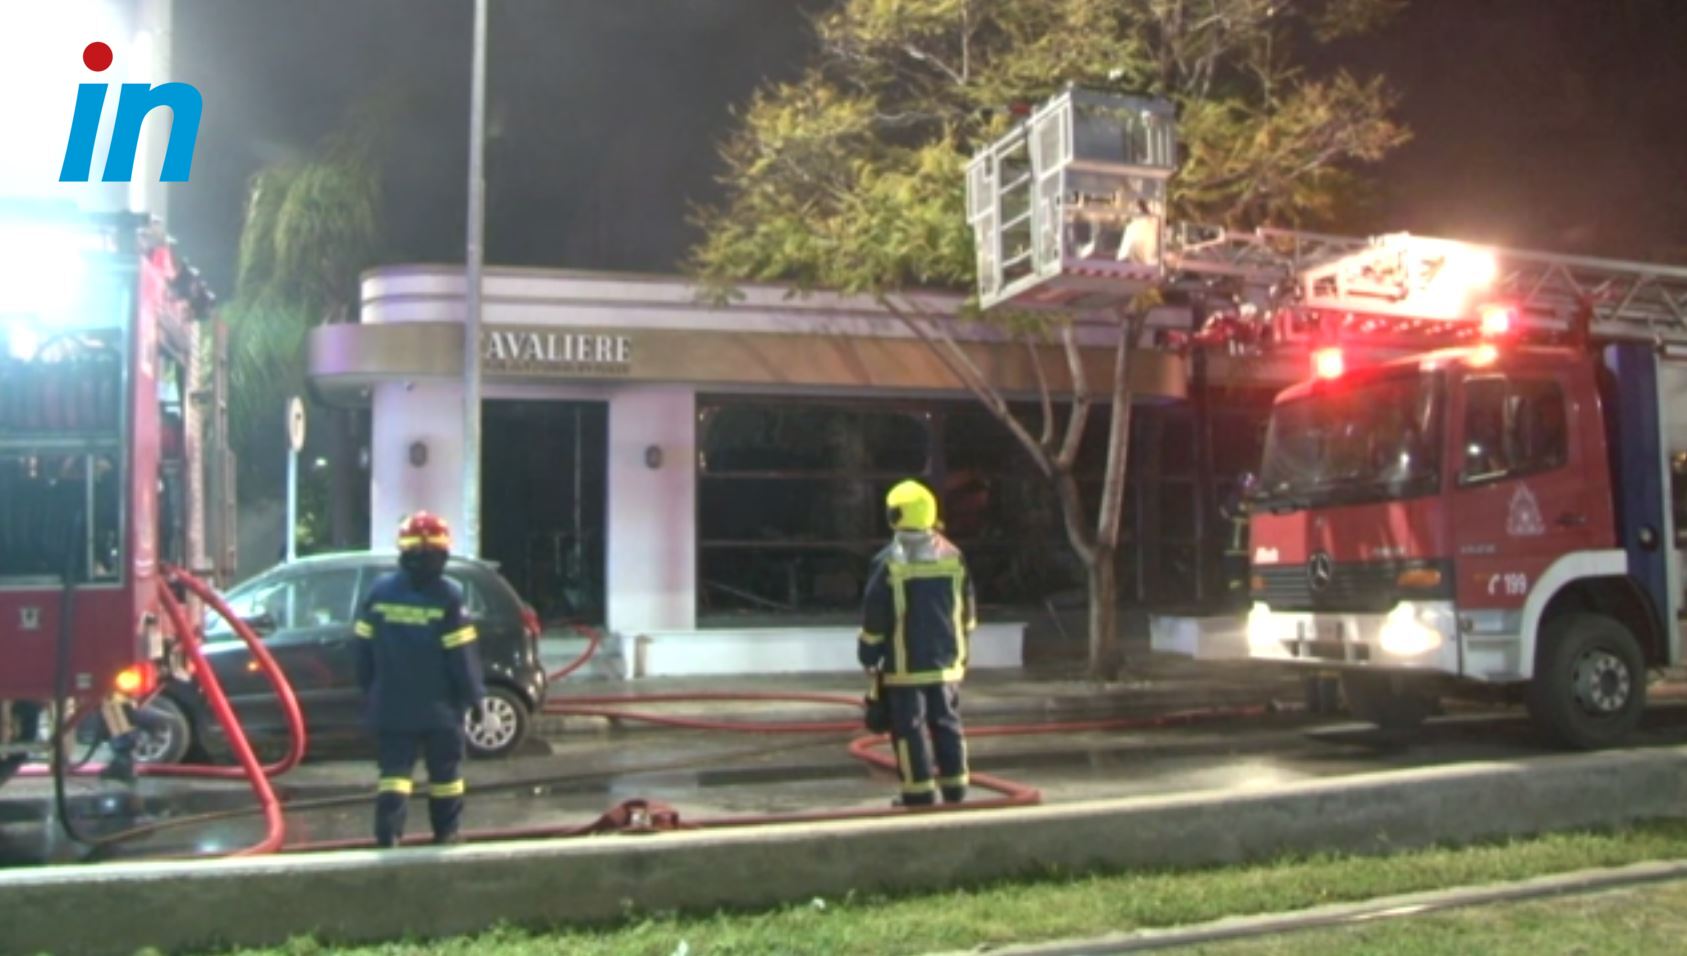 Φωτιά στη Νέα Σμύρνη: «Πέταξαν γκαζάκια μέσα στο εστιατόριο» - Μαρτυρία κατοίκου για την εμπρηστική επίθεση